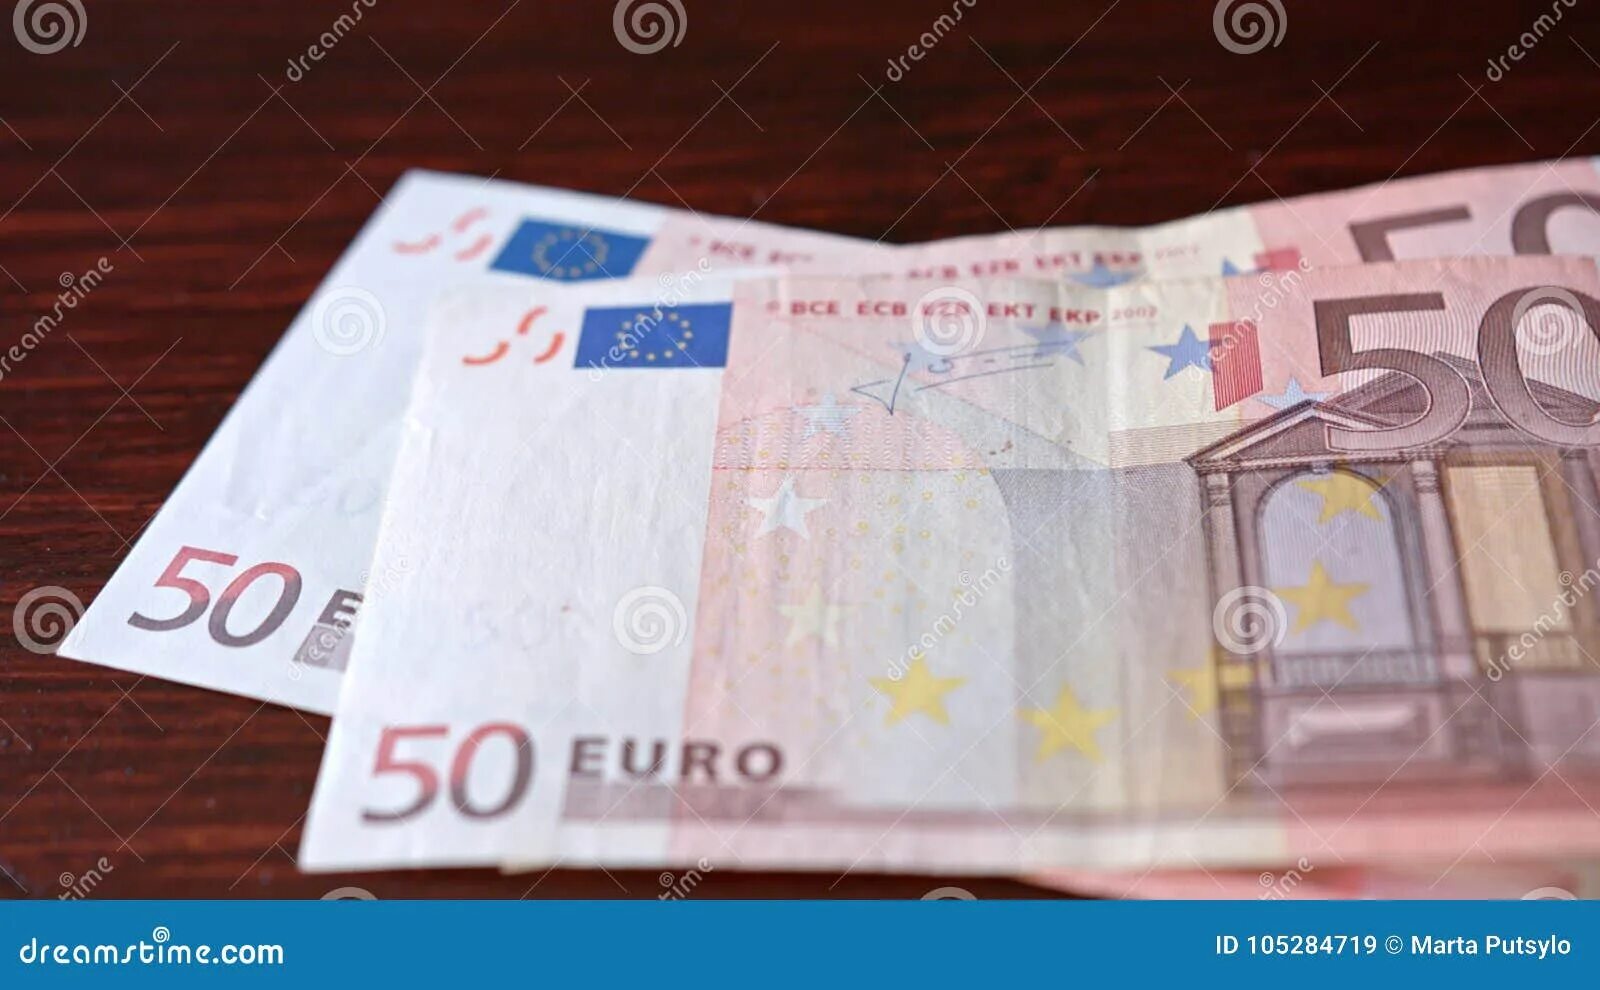 600 евро сколько в рублях. 50 Евро в рублях. 50 Евро на столе. 50 Евро сколько. 50 Евро сейчас.